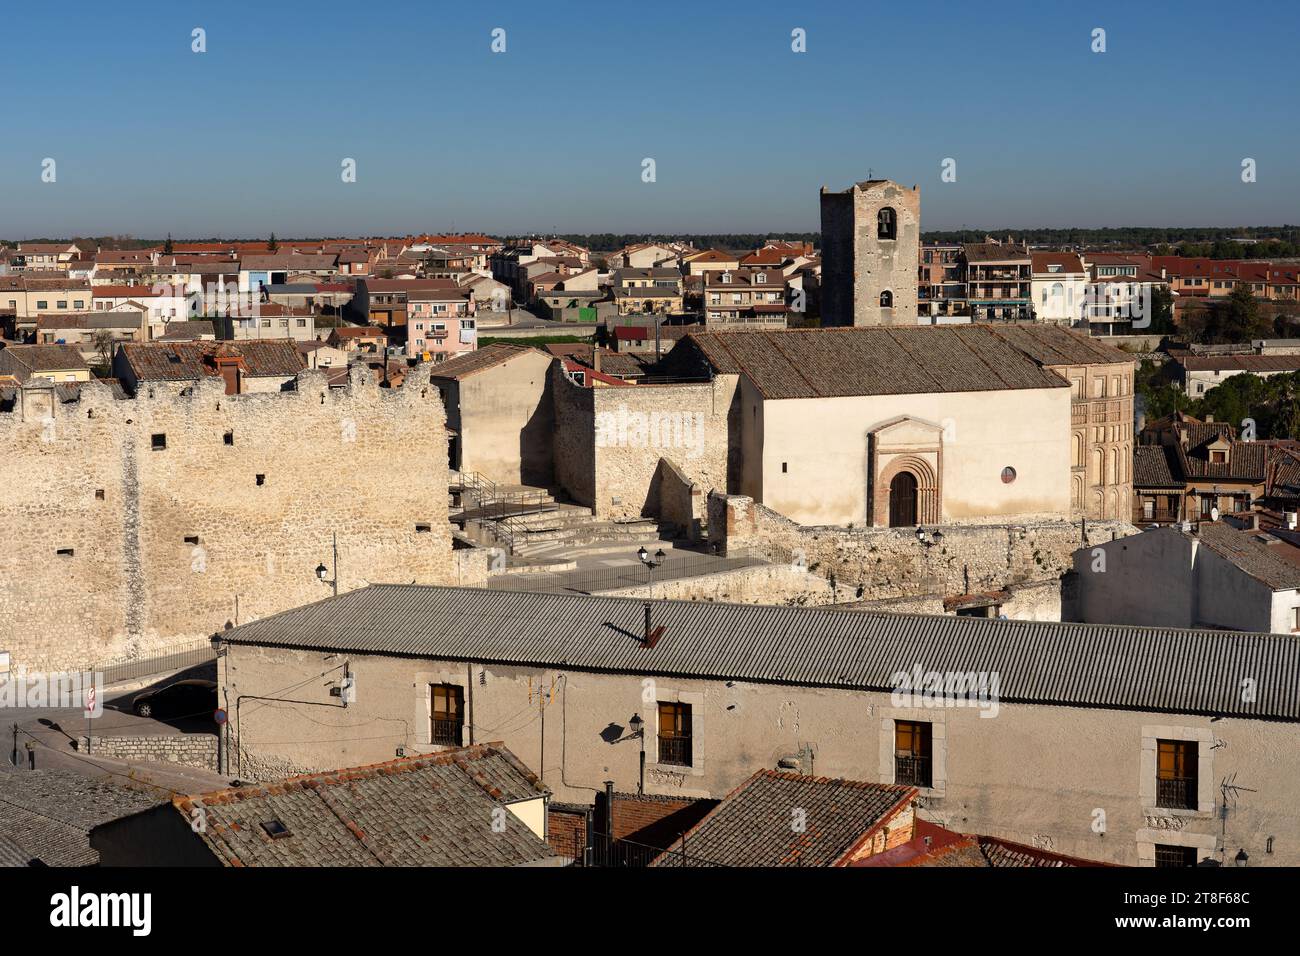 Vista della città vecchia e delle mura del borgo medievale di Cuellar in una giornata di sole. Segovia, Castilla y León, Spagna Foto Stock